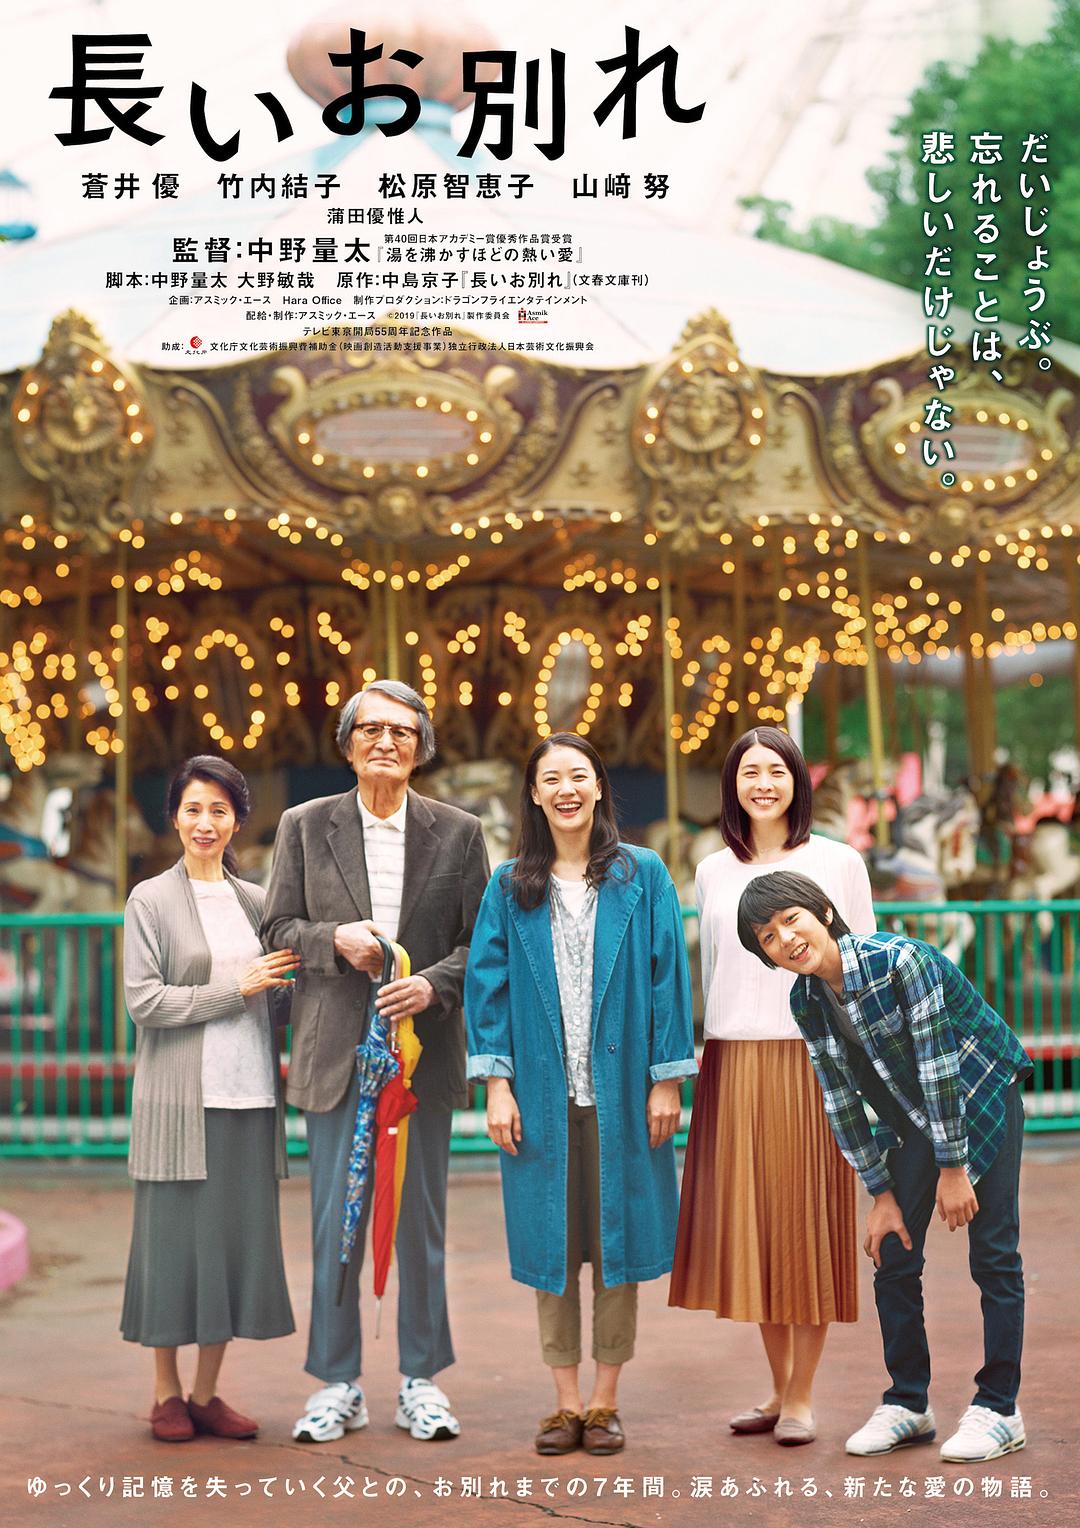 冗长的离别 A.Long.Goodbye.2019.JAPANESE.1080p.BluRay.x264.DTS-CHD 8.02GB-1.png